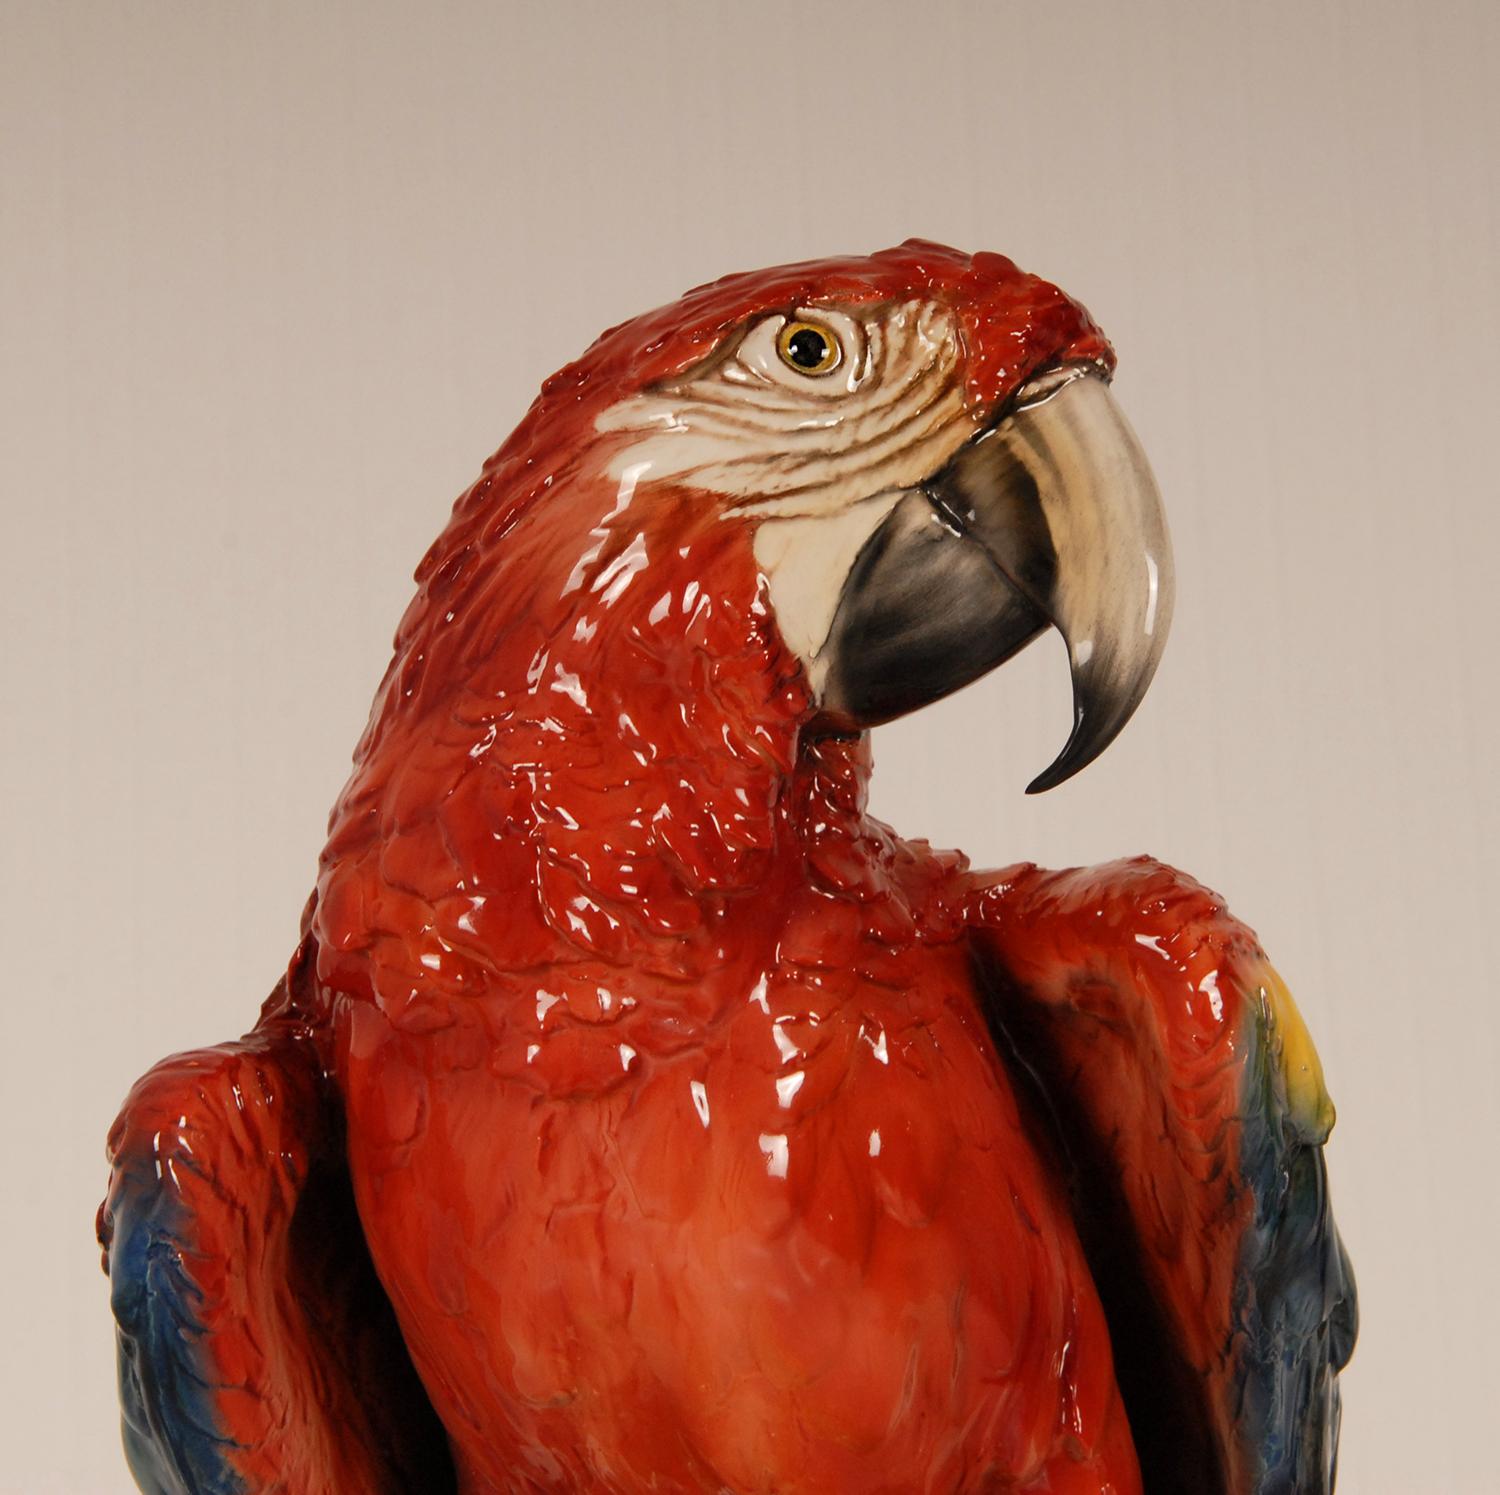 Art Deco Italian Ceramic Animal Figurine Macaw Parrot Porcelain Bird Figure For Sale 3